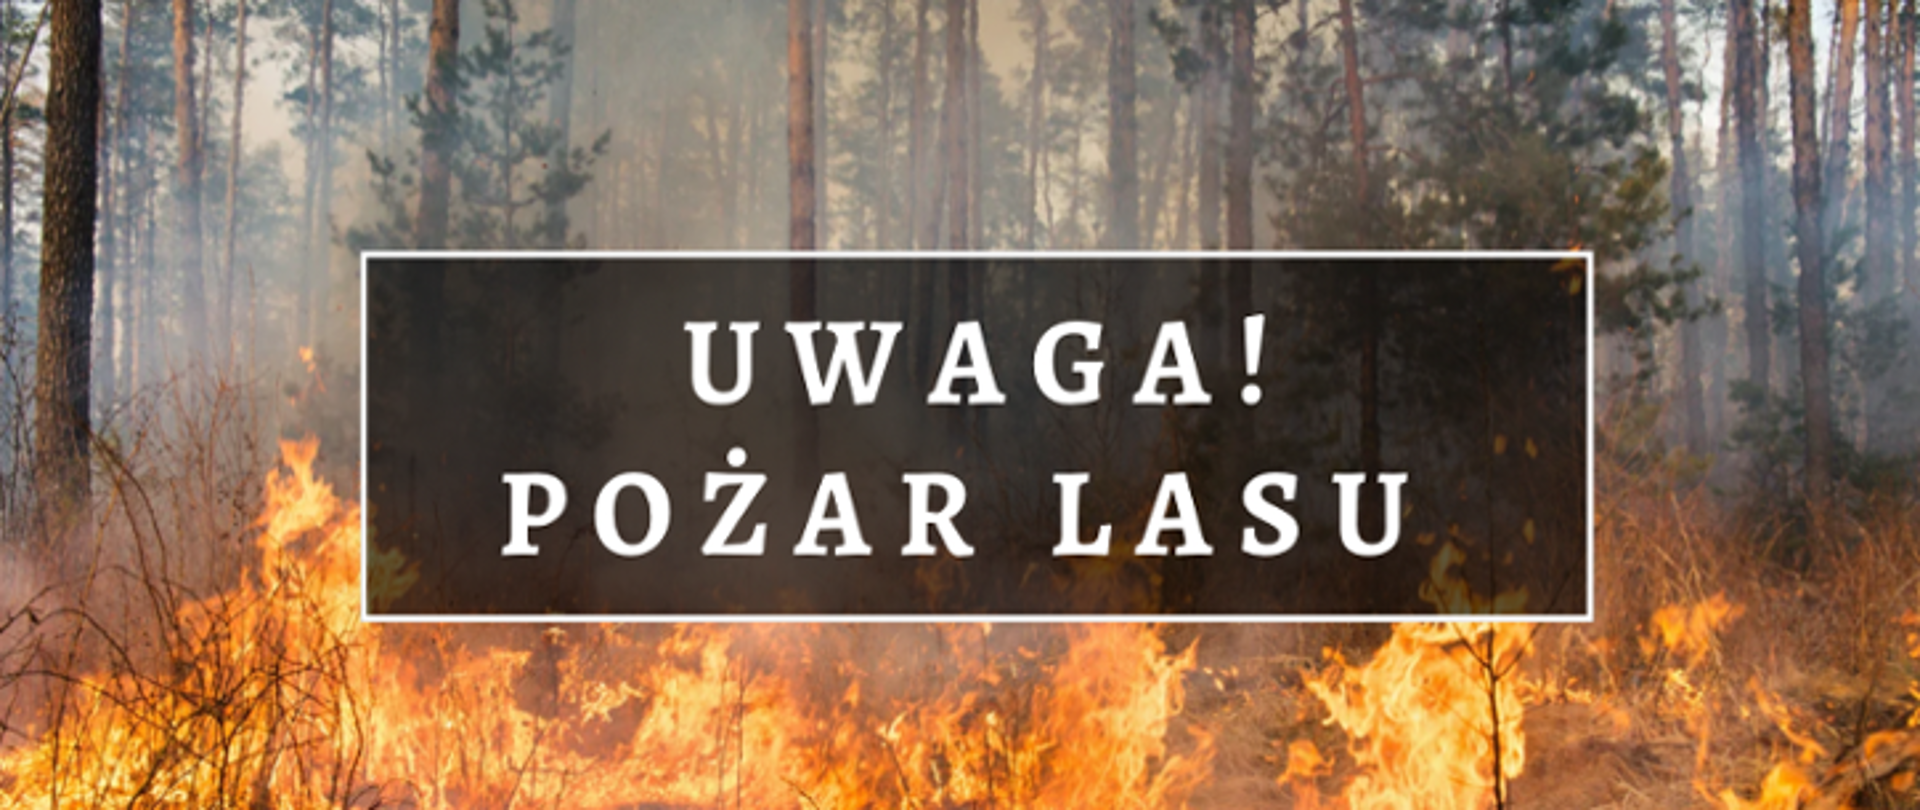 Na tle płonącego lasu widnieje napis "Uwaga Pożar Lasu" 